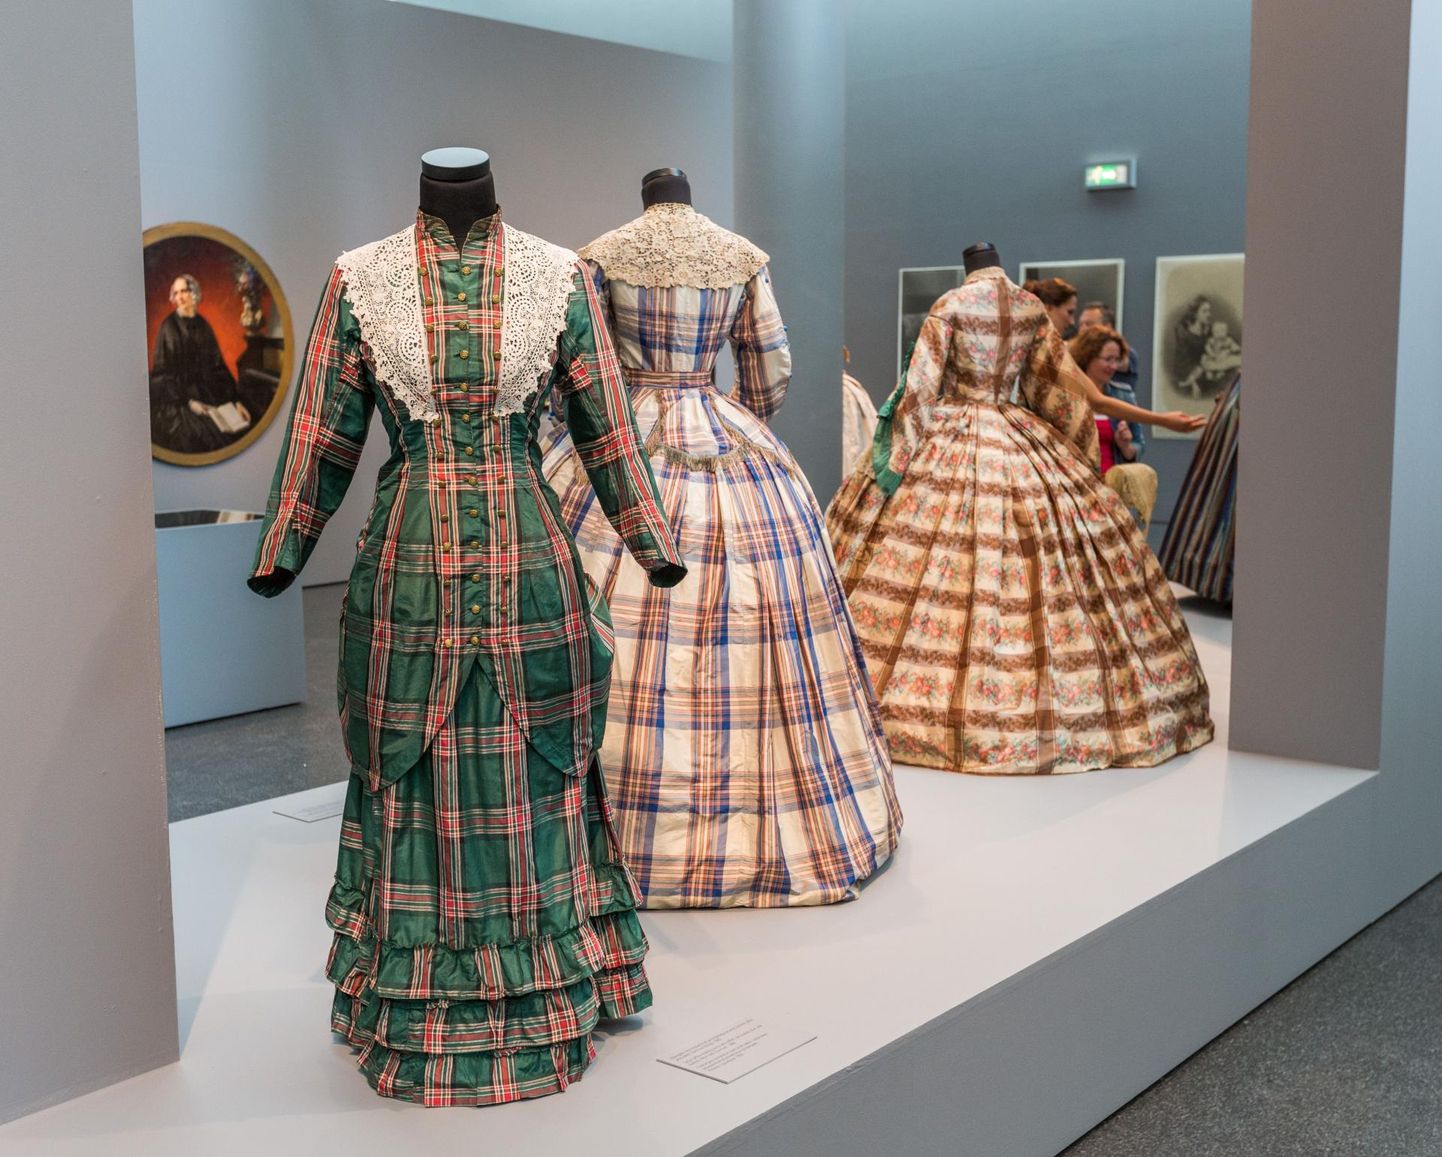 Kleidid Venemaa moeajaloolase Aleksandr Vassiljevi kogust olid 2016. aastal näitusel Kumus.